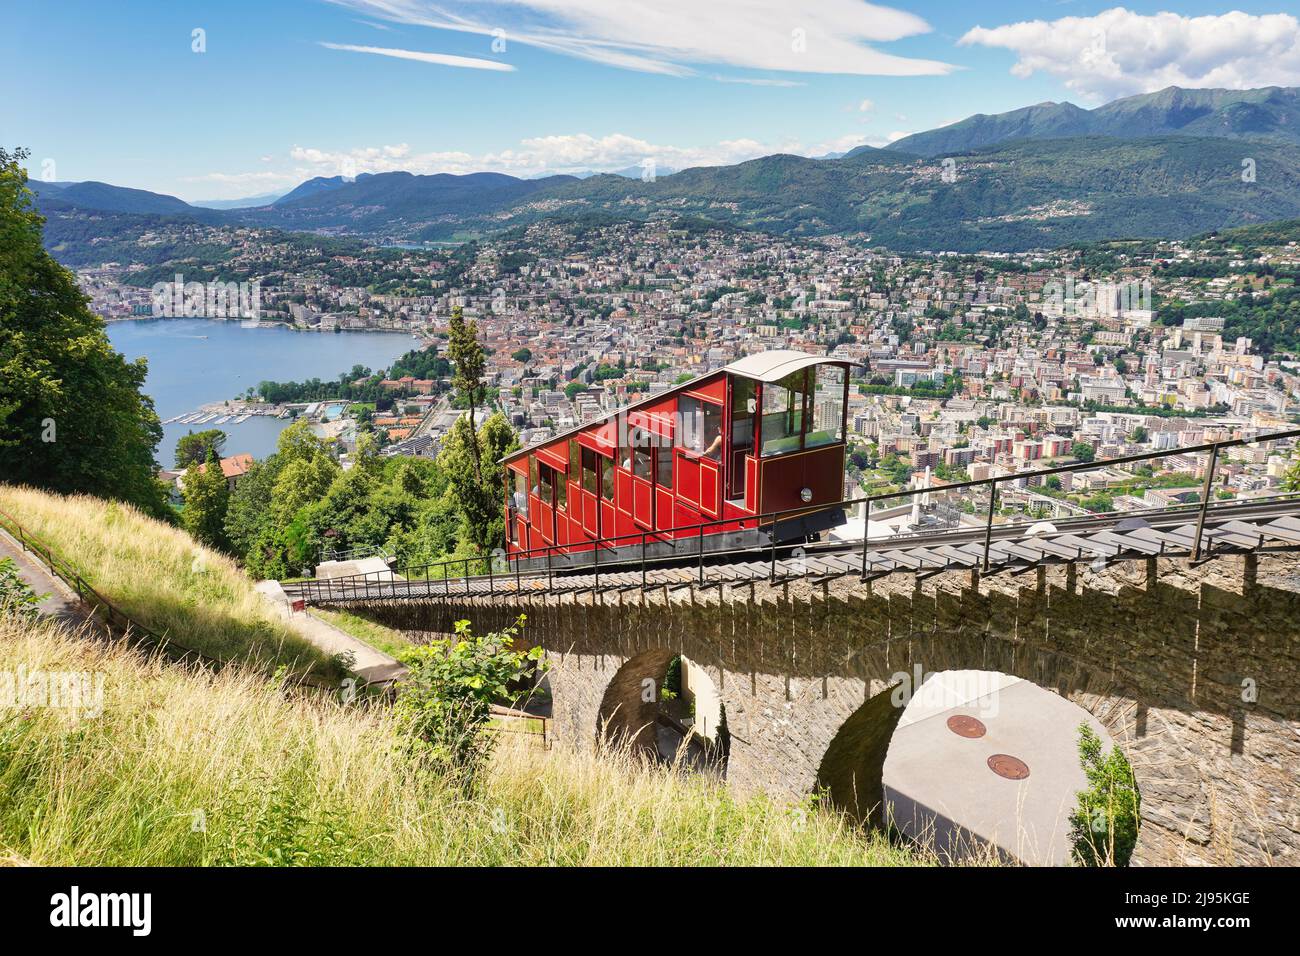 Lugano, Cantone Ticino, Svizzera. Funicolare Monte Brè. Trasporto pubblico in funivia con vista panoramica sulla città. Foto Stock